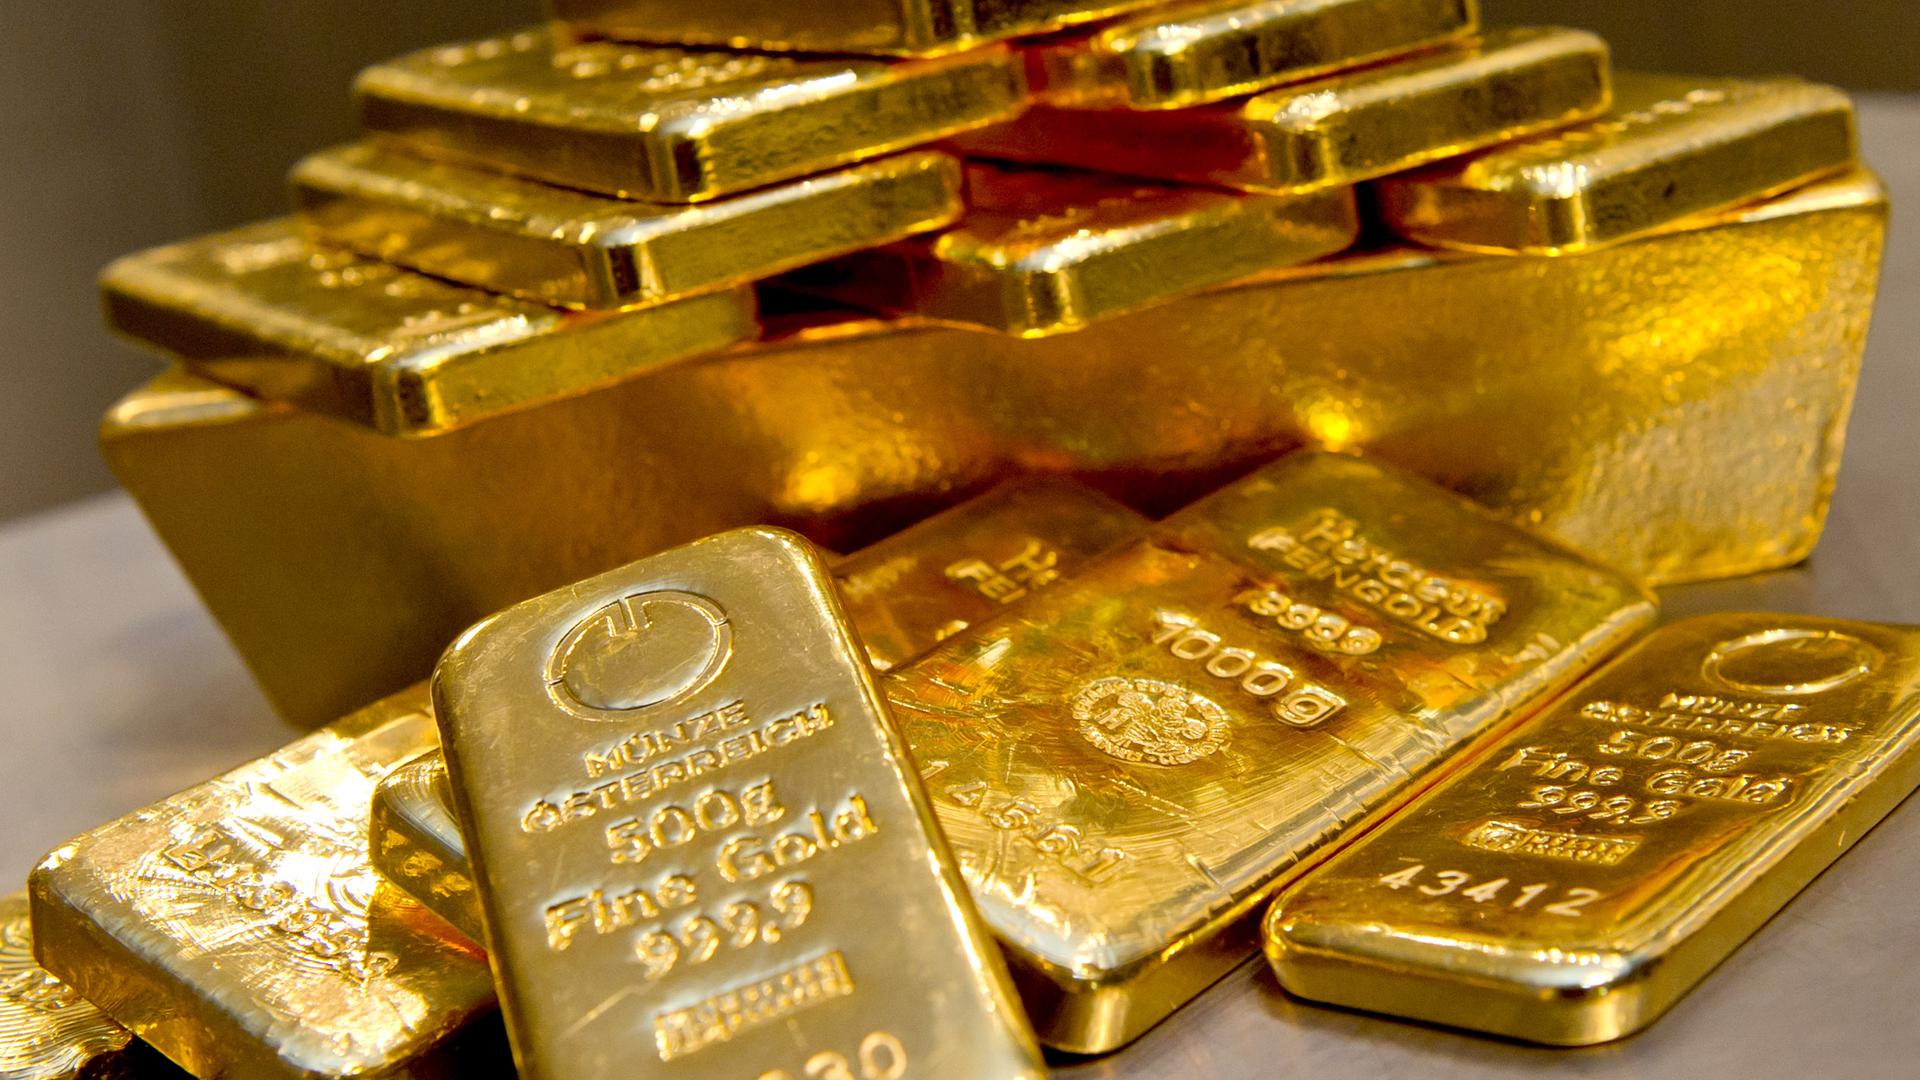 Goldbarren in unterschiedlicher Größe liegen bei einem Goldhändler in einem Tresor.